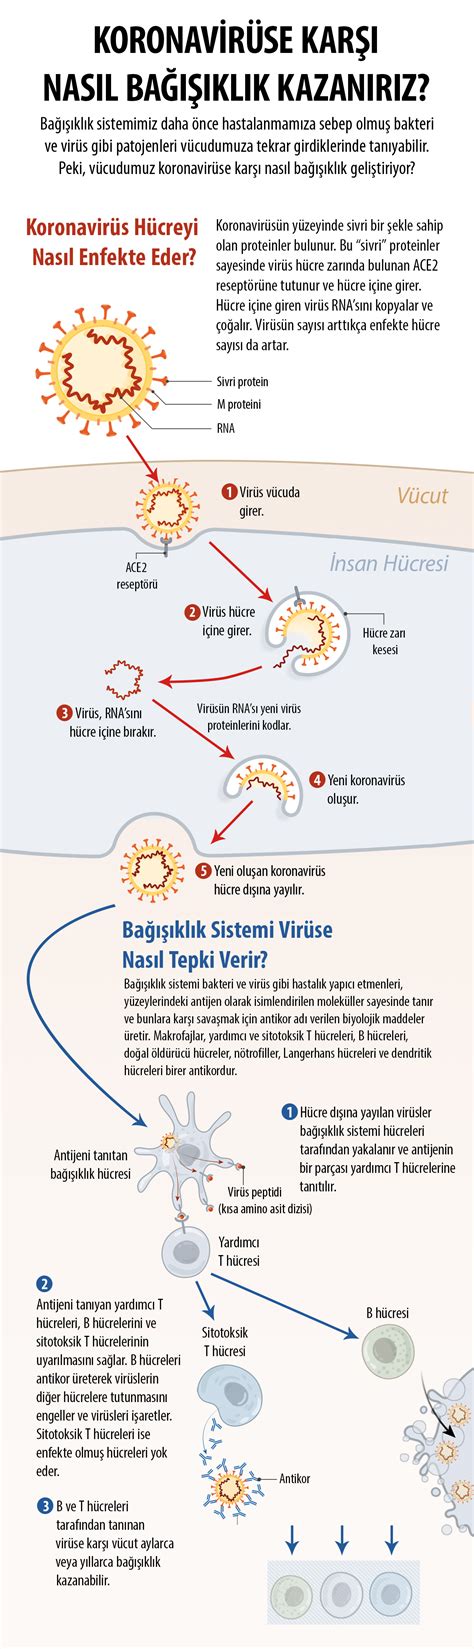 Aşı randevusu i̇ptal edilir mi? Koronavirüse Karşı Yürütülen Aşı Çalışmaları | TÜBİTAK Bilim Genç